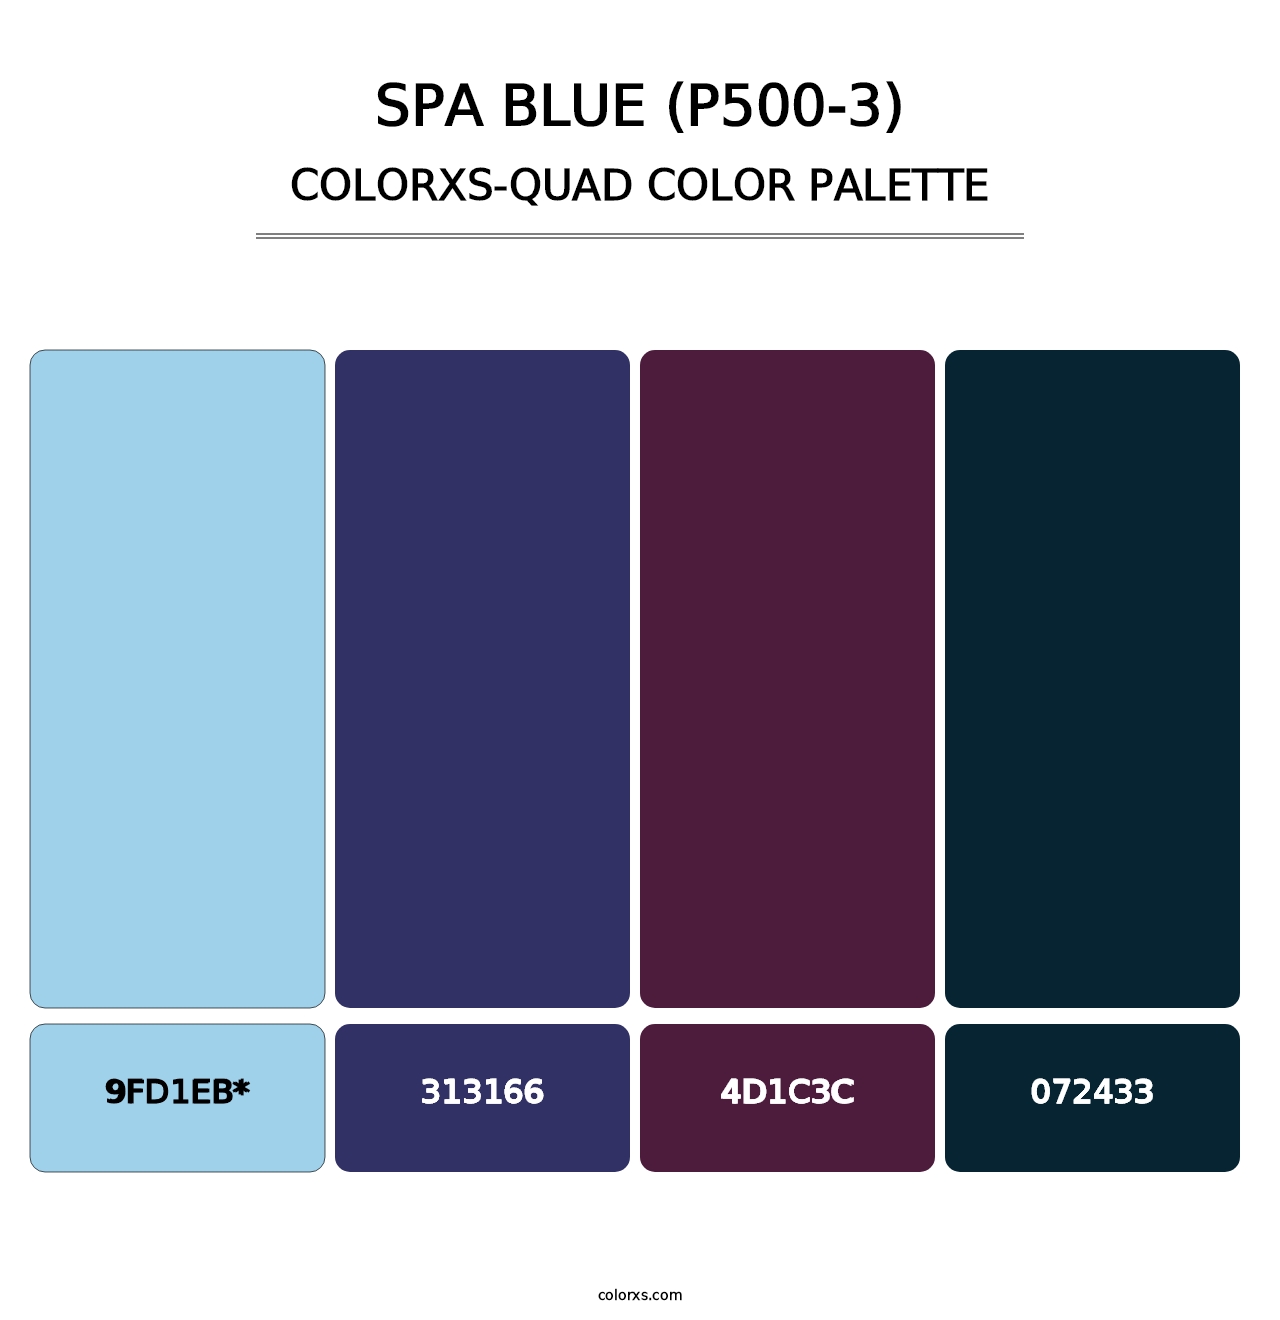 Spa Blue (P500-3) - Colorxs Quad Palette